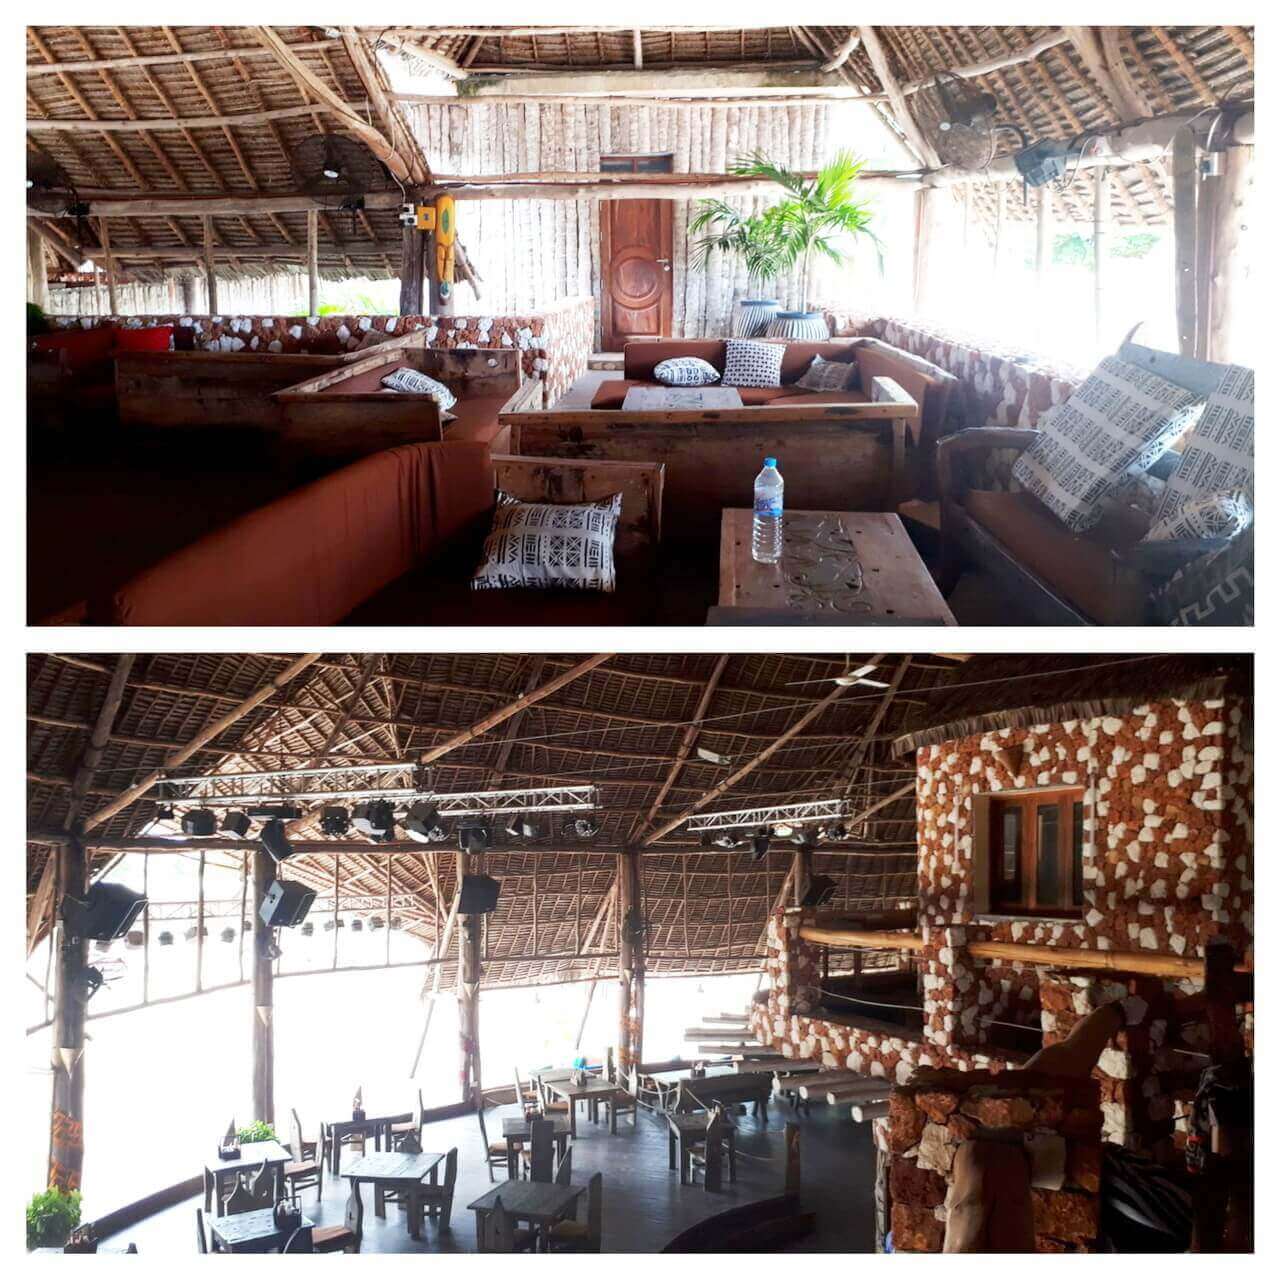 Kendwa Rocks restaurant inside